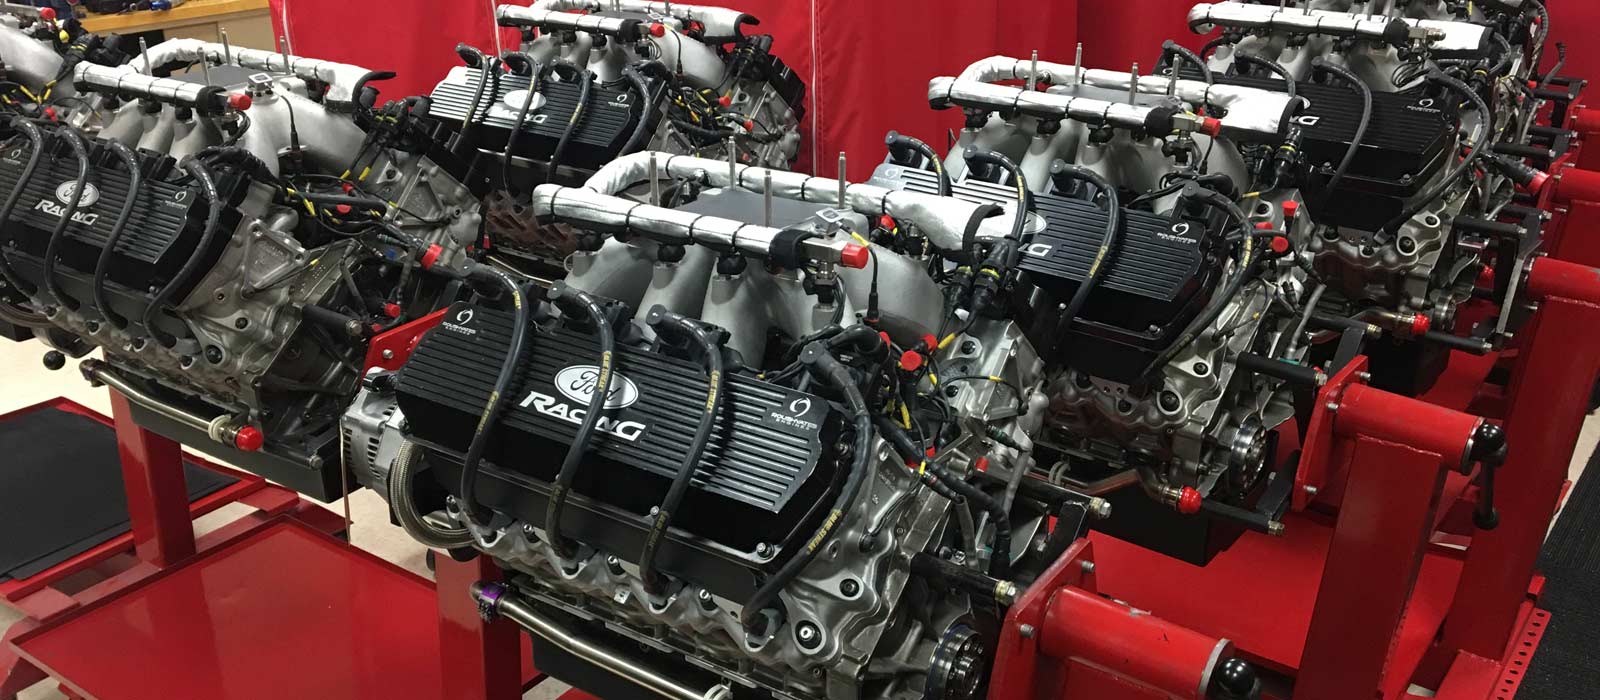 Look Who Got Roush Yates Engines’ FR9 NASCAR Engines